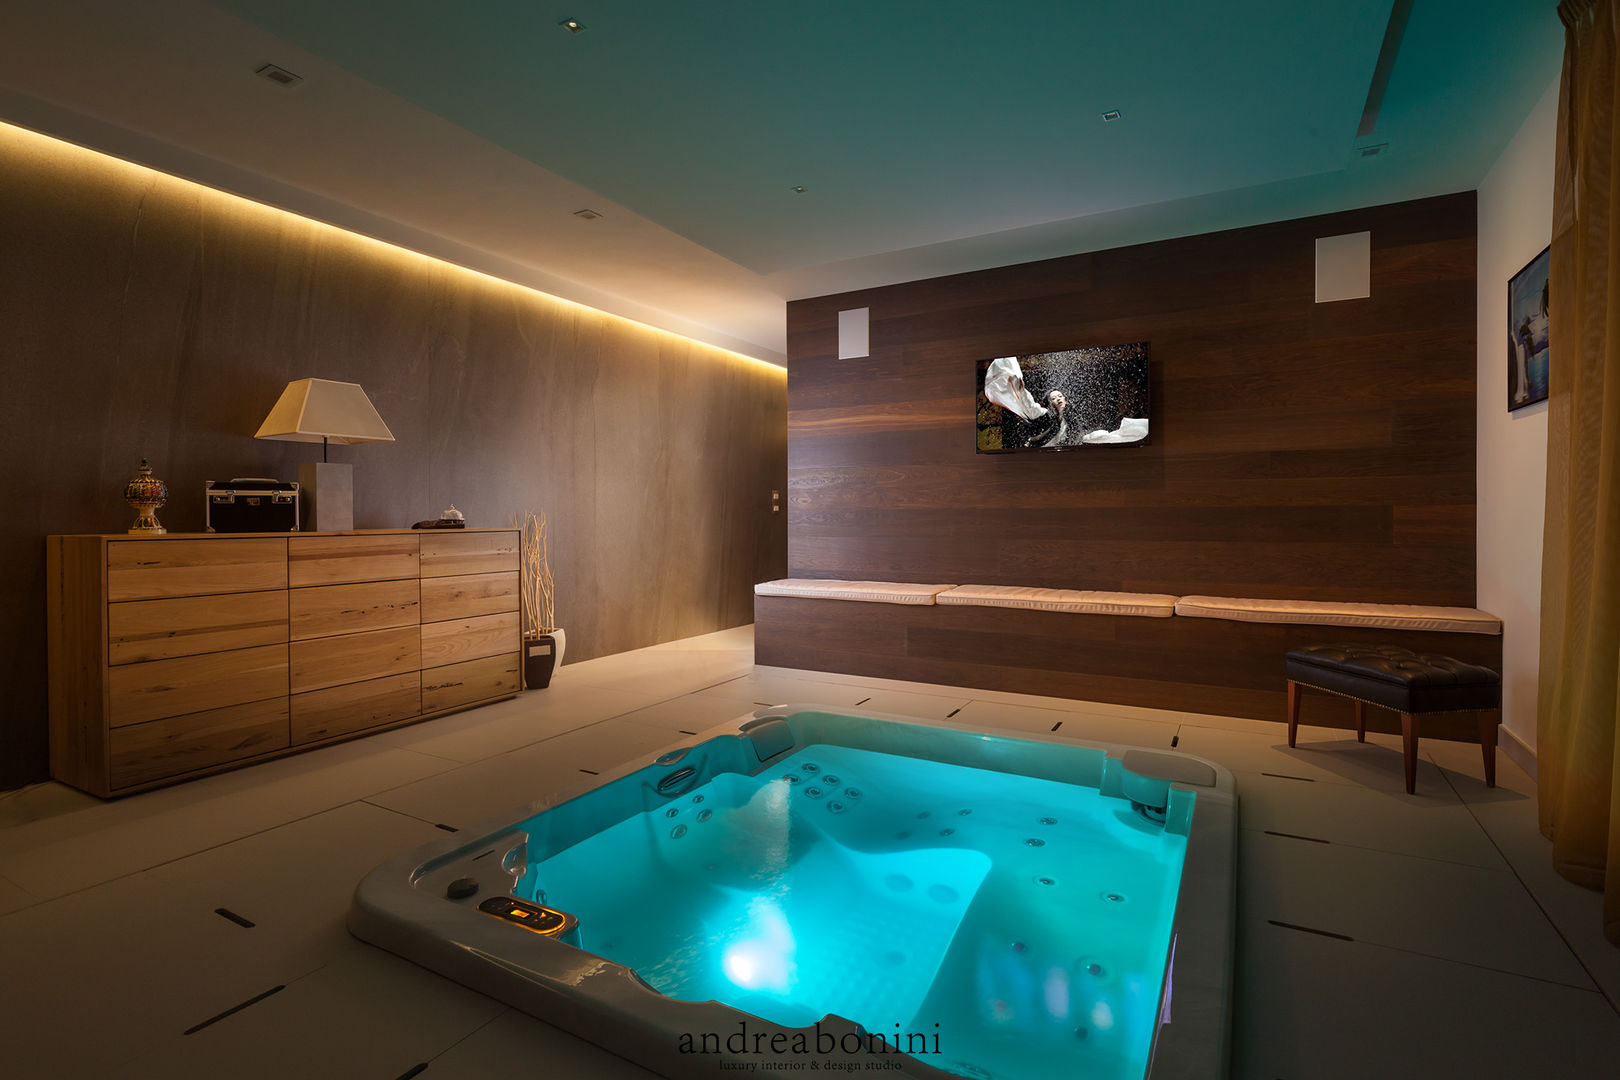 Villa on lake Garda, Andrea Bonini luxury interior & design studio Andrea Bonini luxury interior & design studio Spa moderno